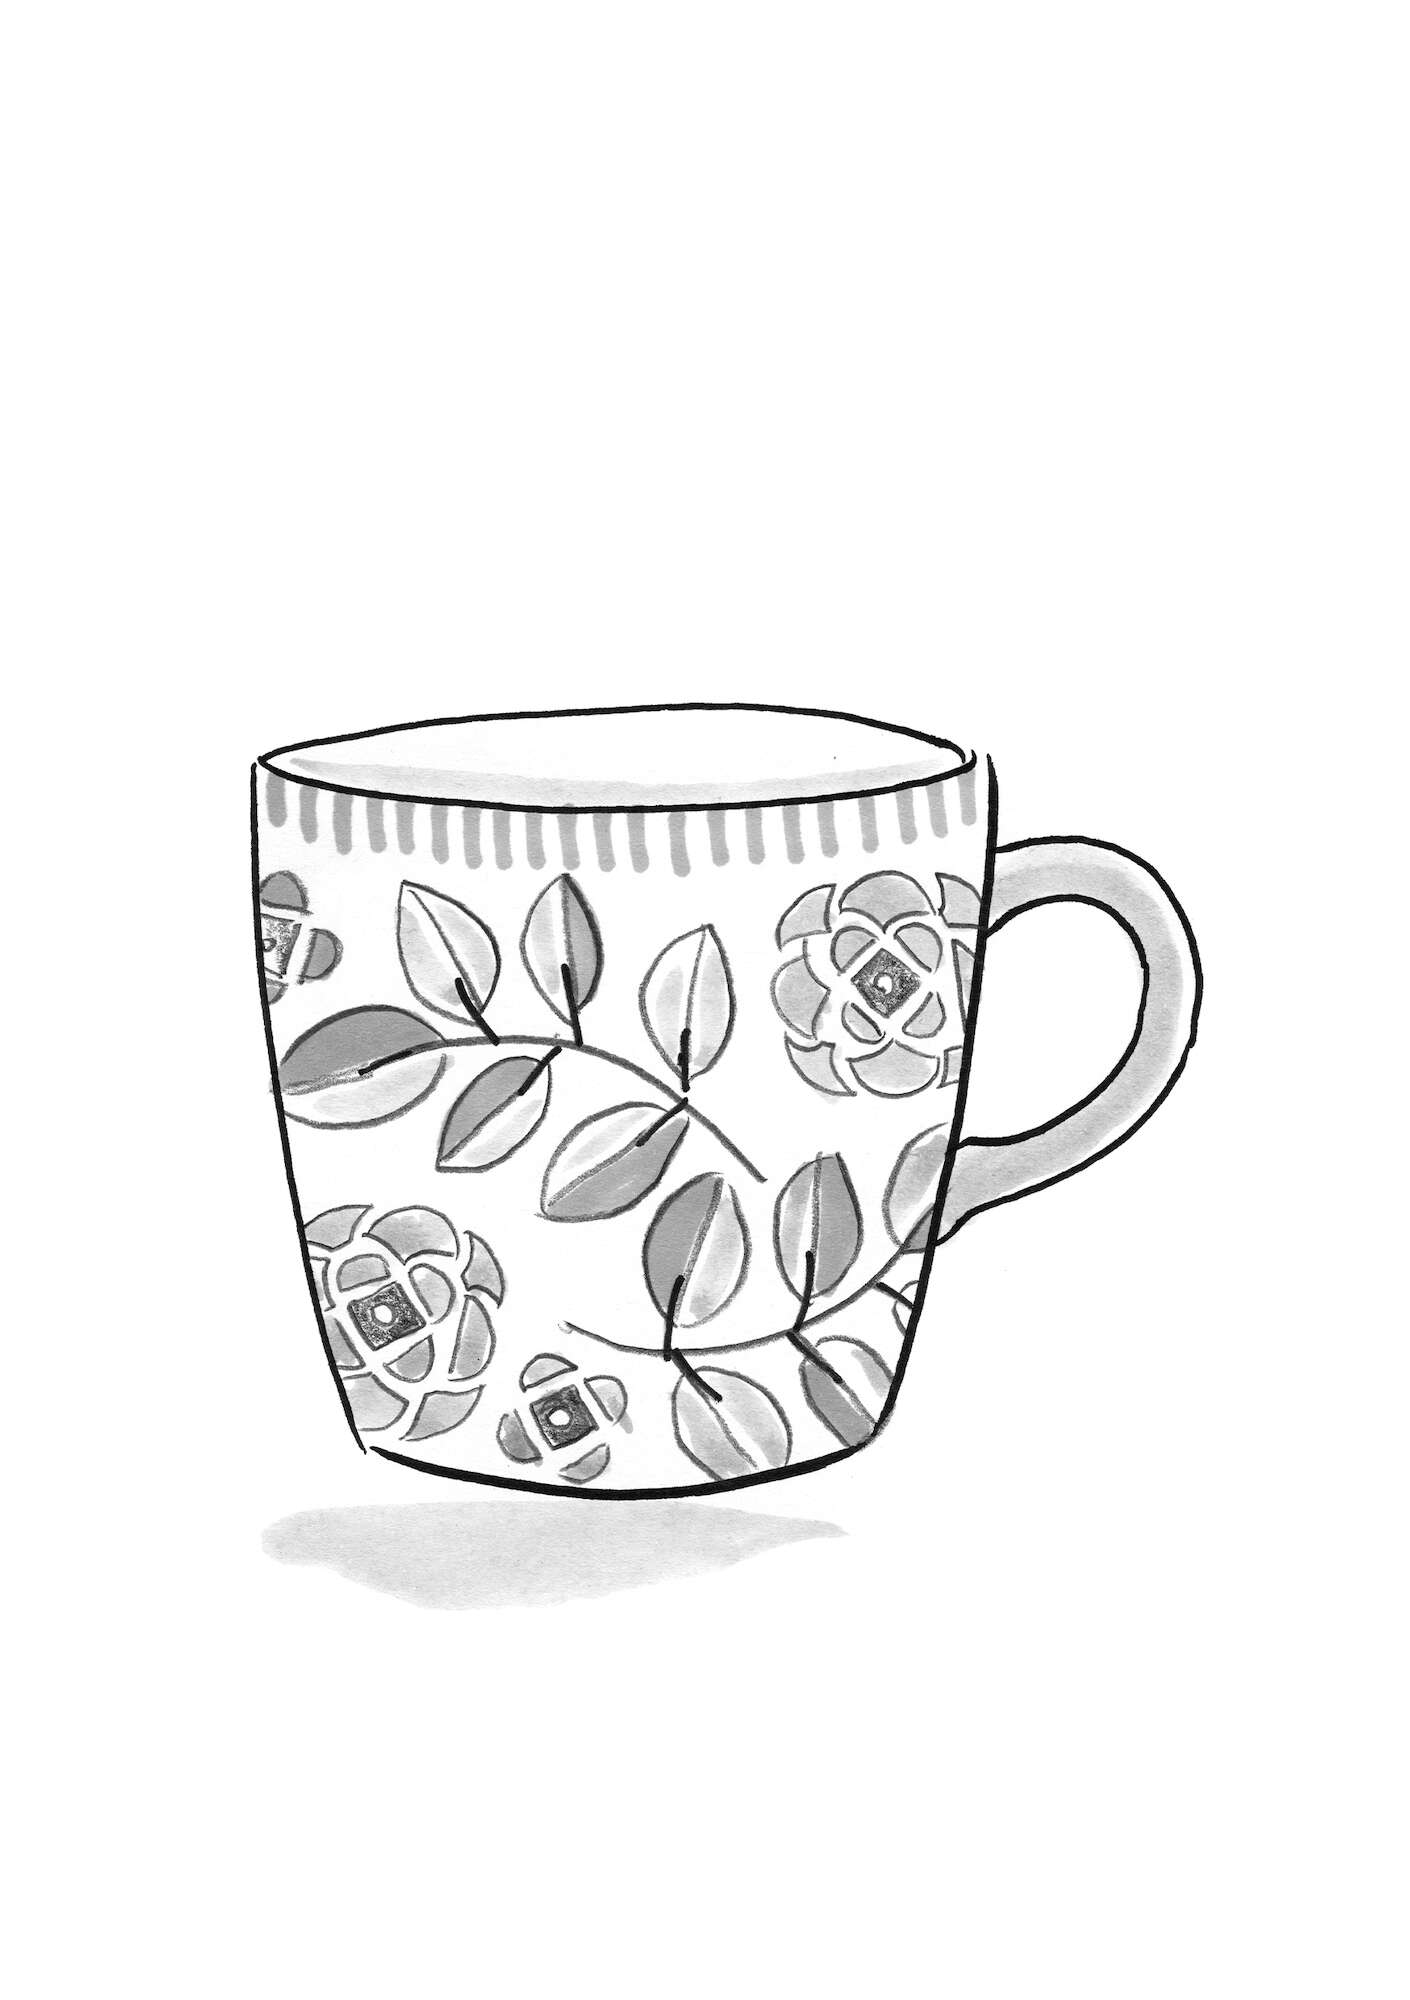  “Tulsi” ceramic mug chilli